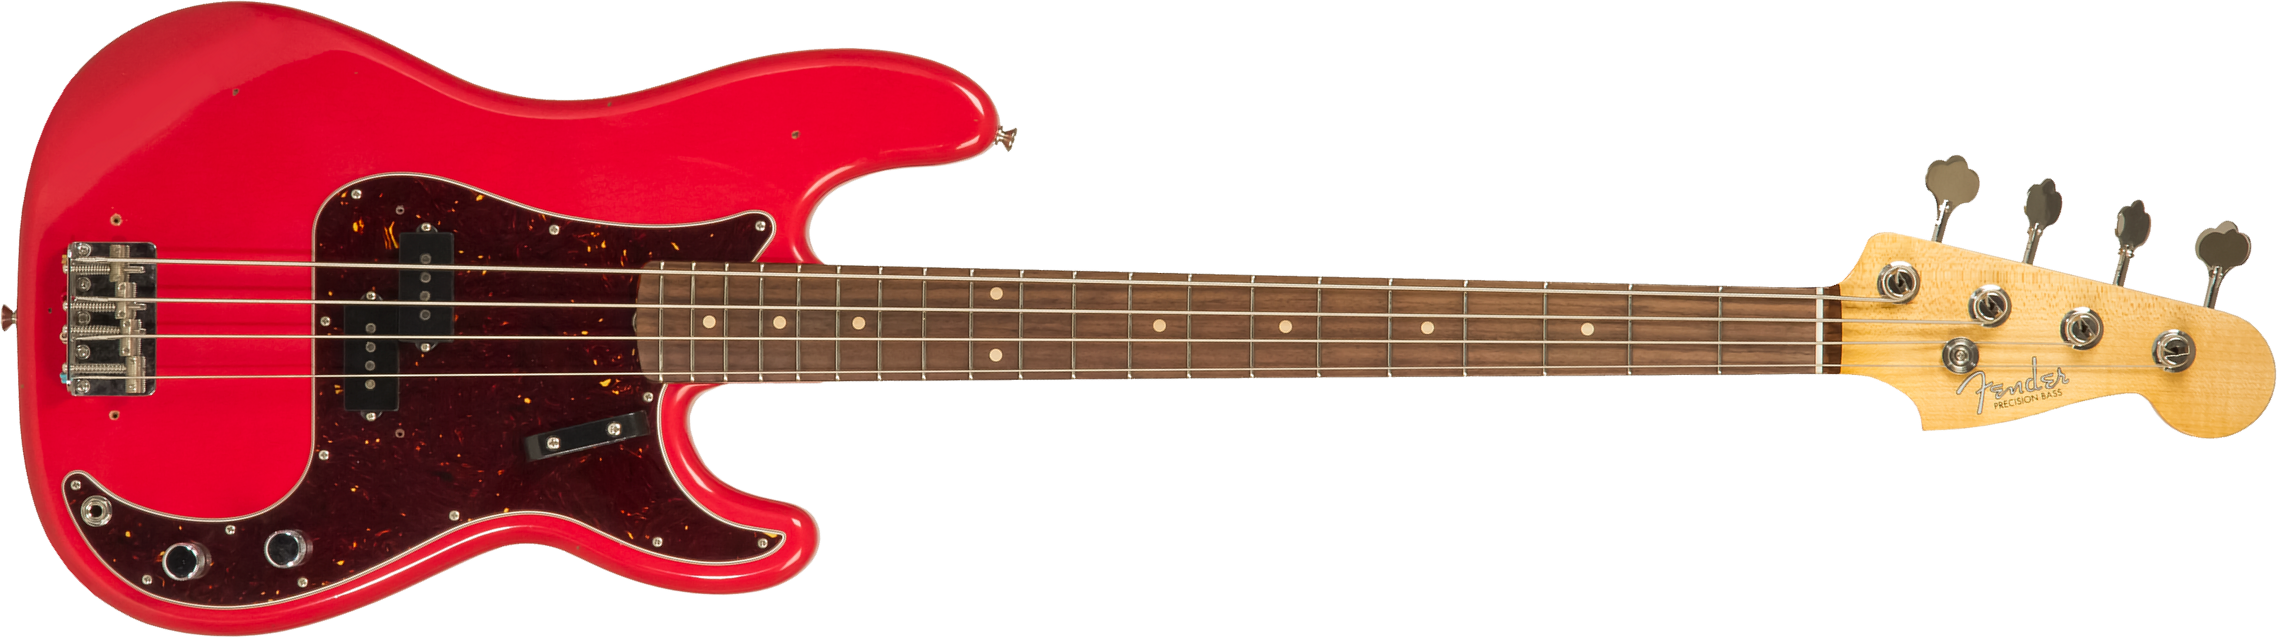 Fender Custom Shop Precision Bass 1962 Rw #r126357 - Journeyman Relic Fiesta Red - Bajo eléctrico de cuerpo sólido - Main picture